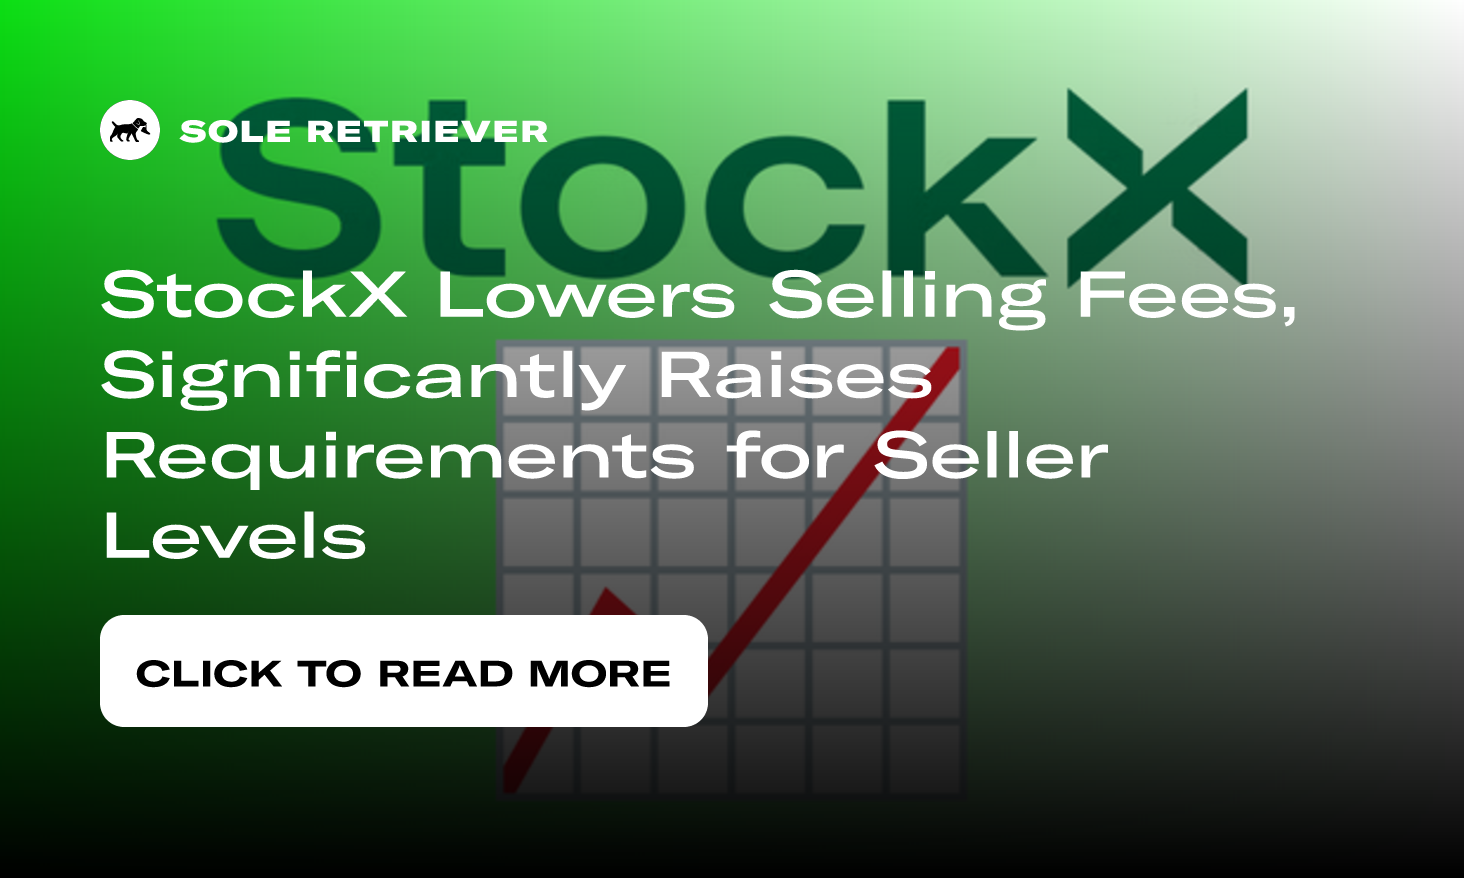 https://www.soleretriever.com/og/blog/stockx-lower-selling-fees-higher-seller-level-requirements-2023